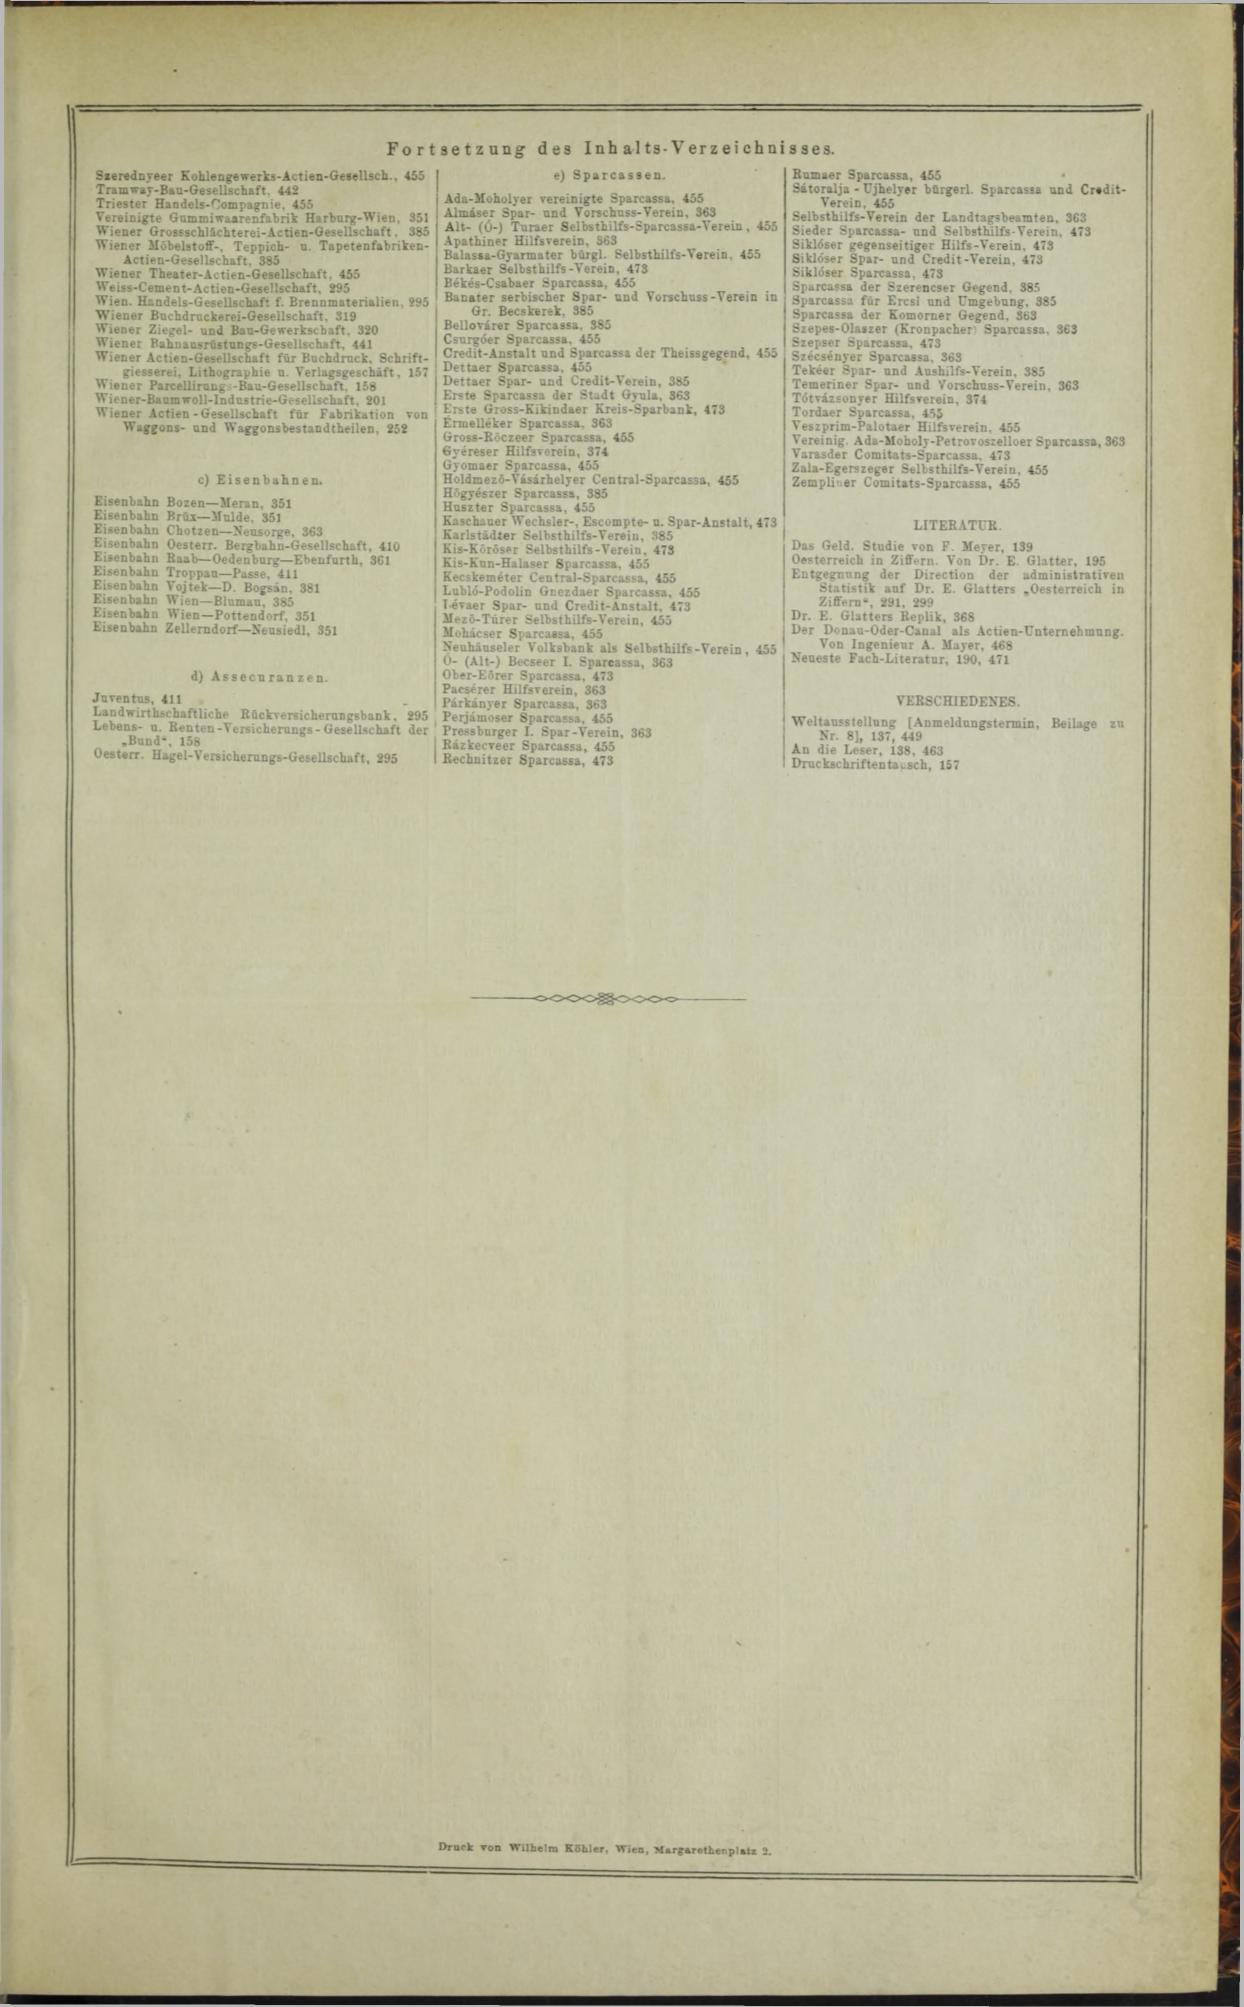 Der Tresor 09.10.1872 - Seite 18